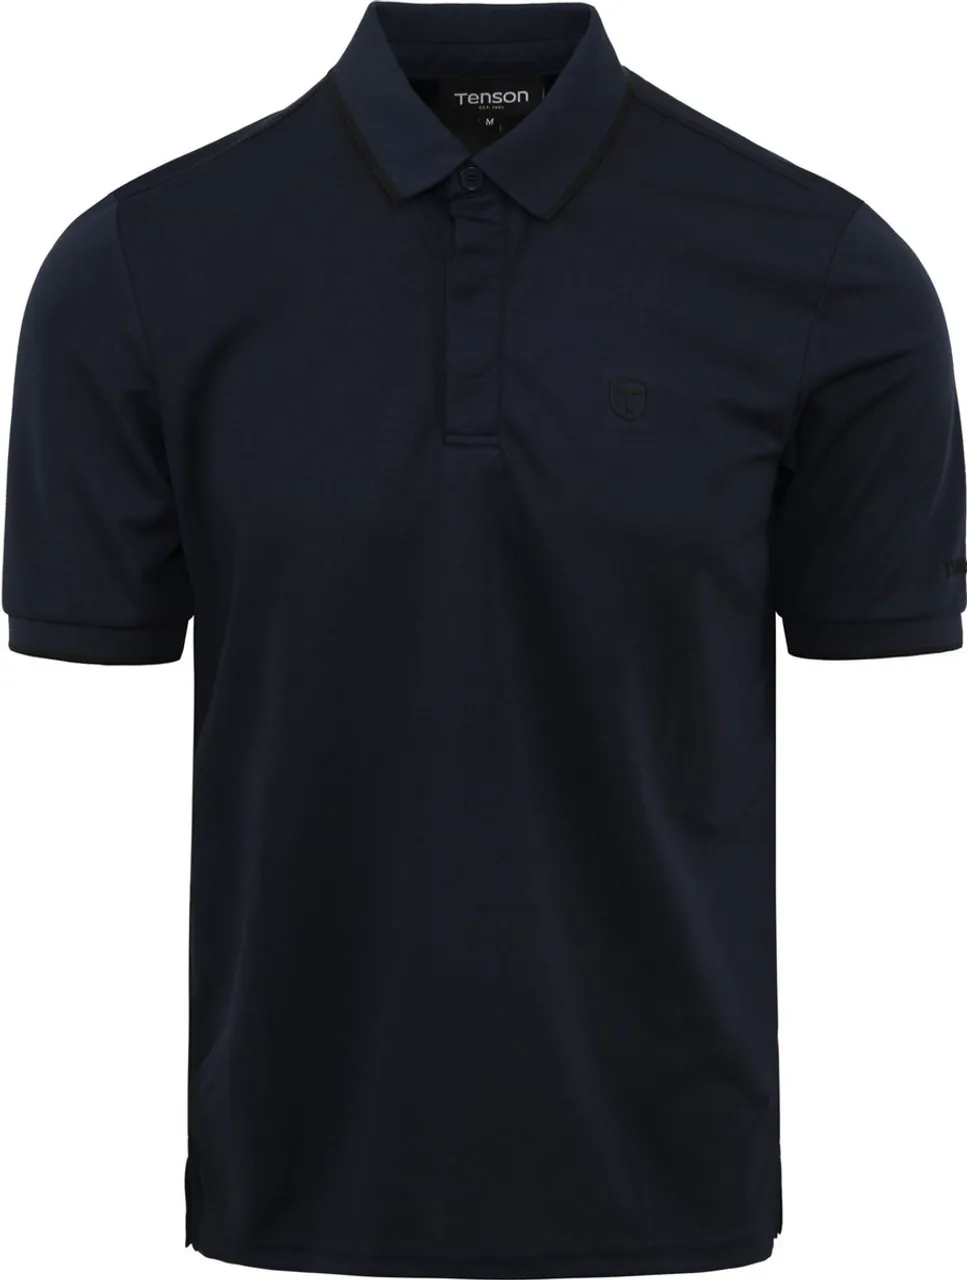 Tenson - Poloshirt Txlite Donkerblauw - Modern-fit - Heren Poloshirt